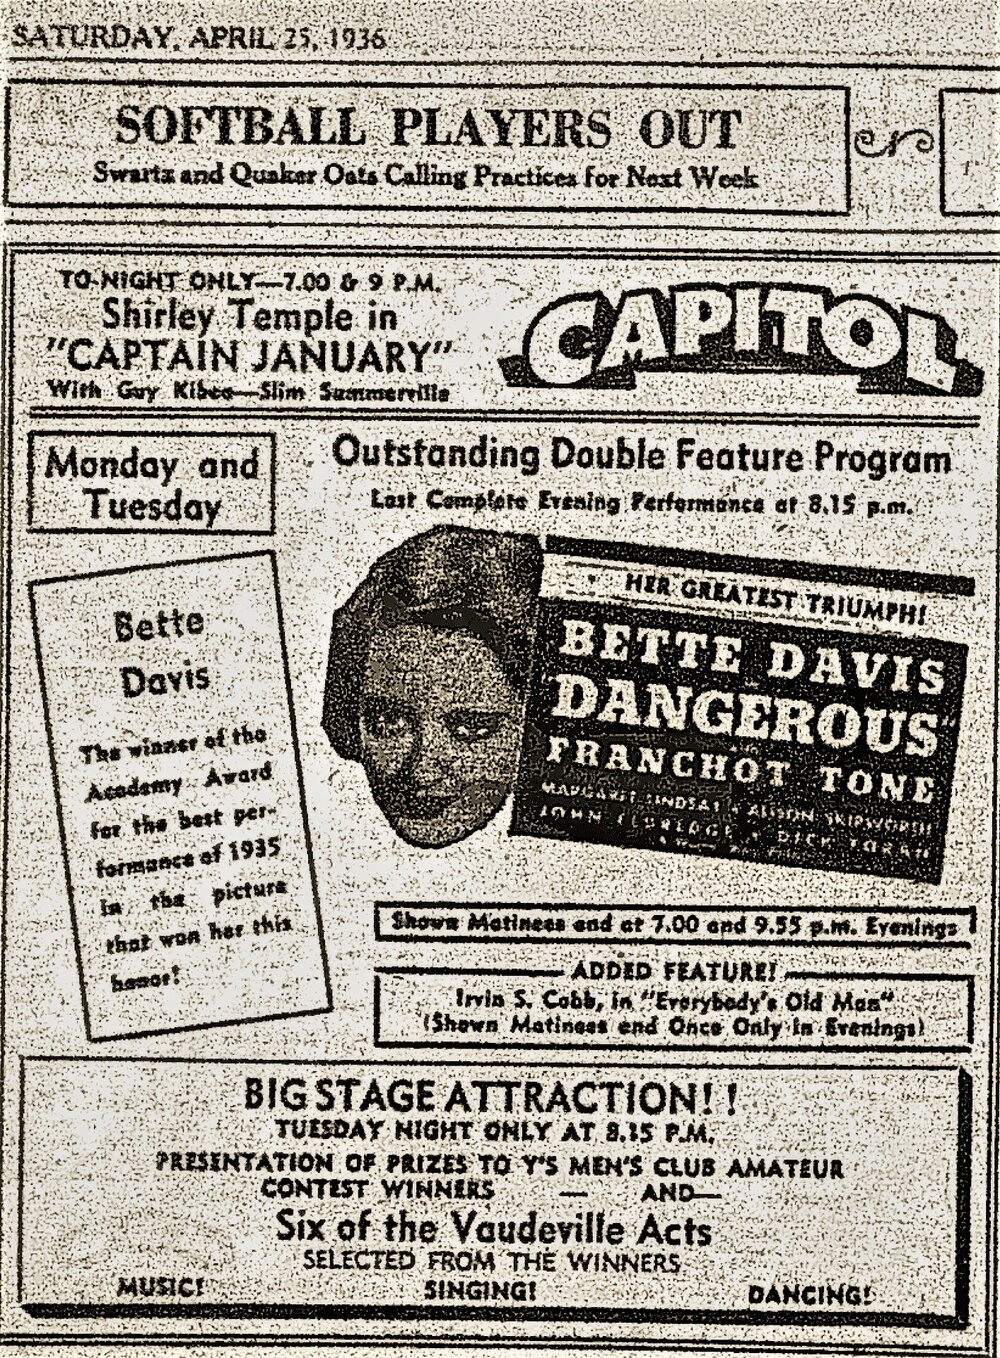 1936 April 25 p9 Capitol Bette Davis Stage show (2).JPG